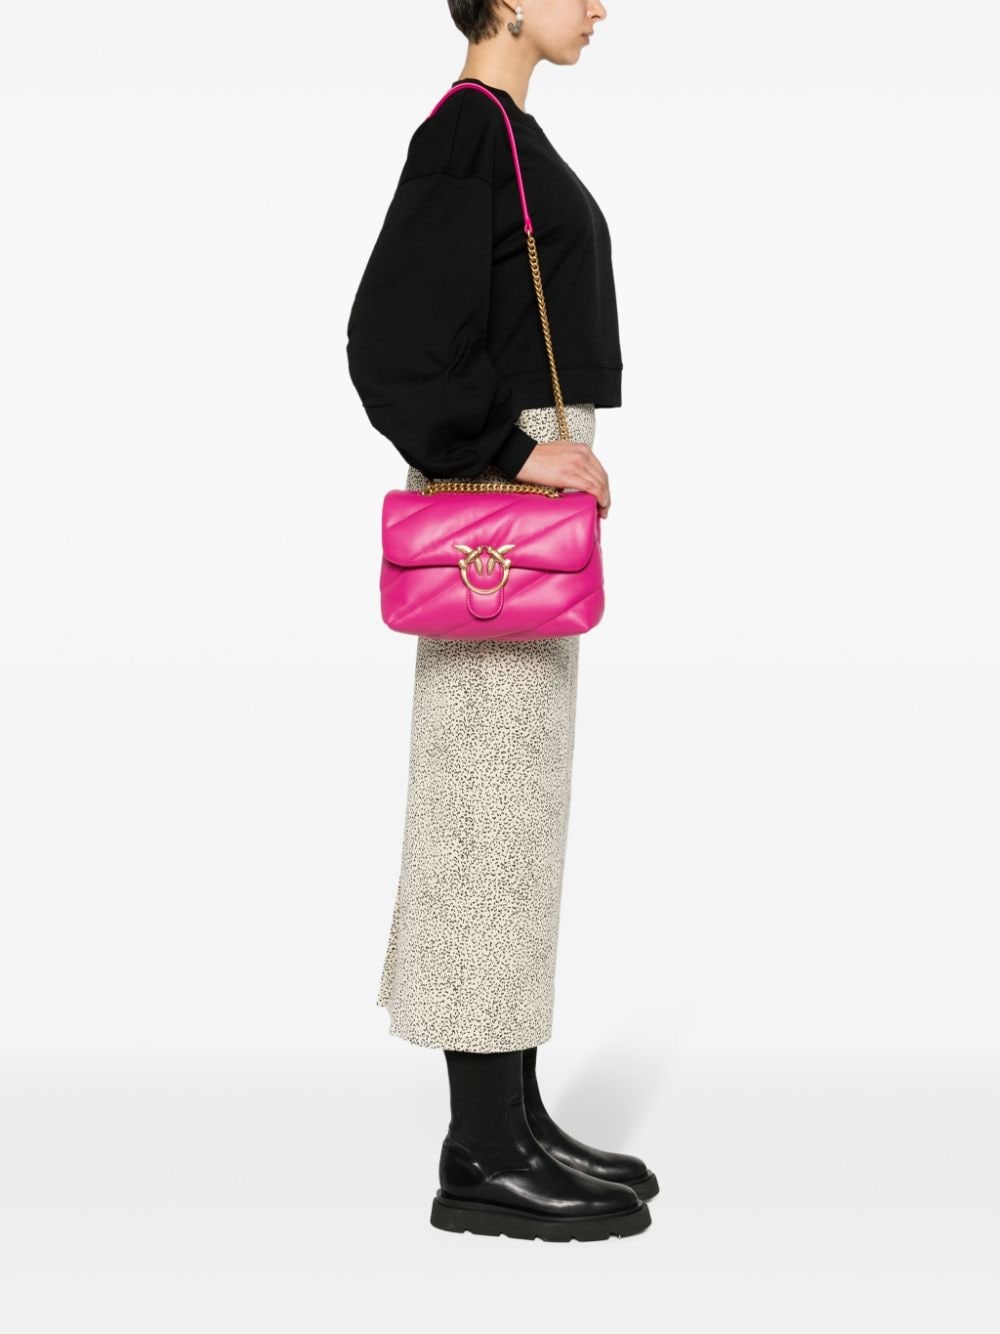 Женская сумка Pinko, розовый